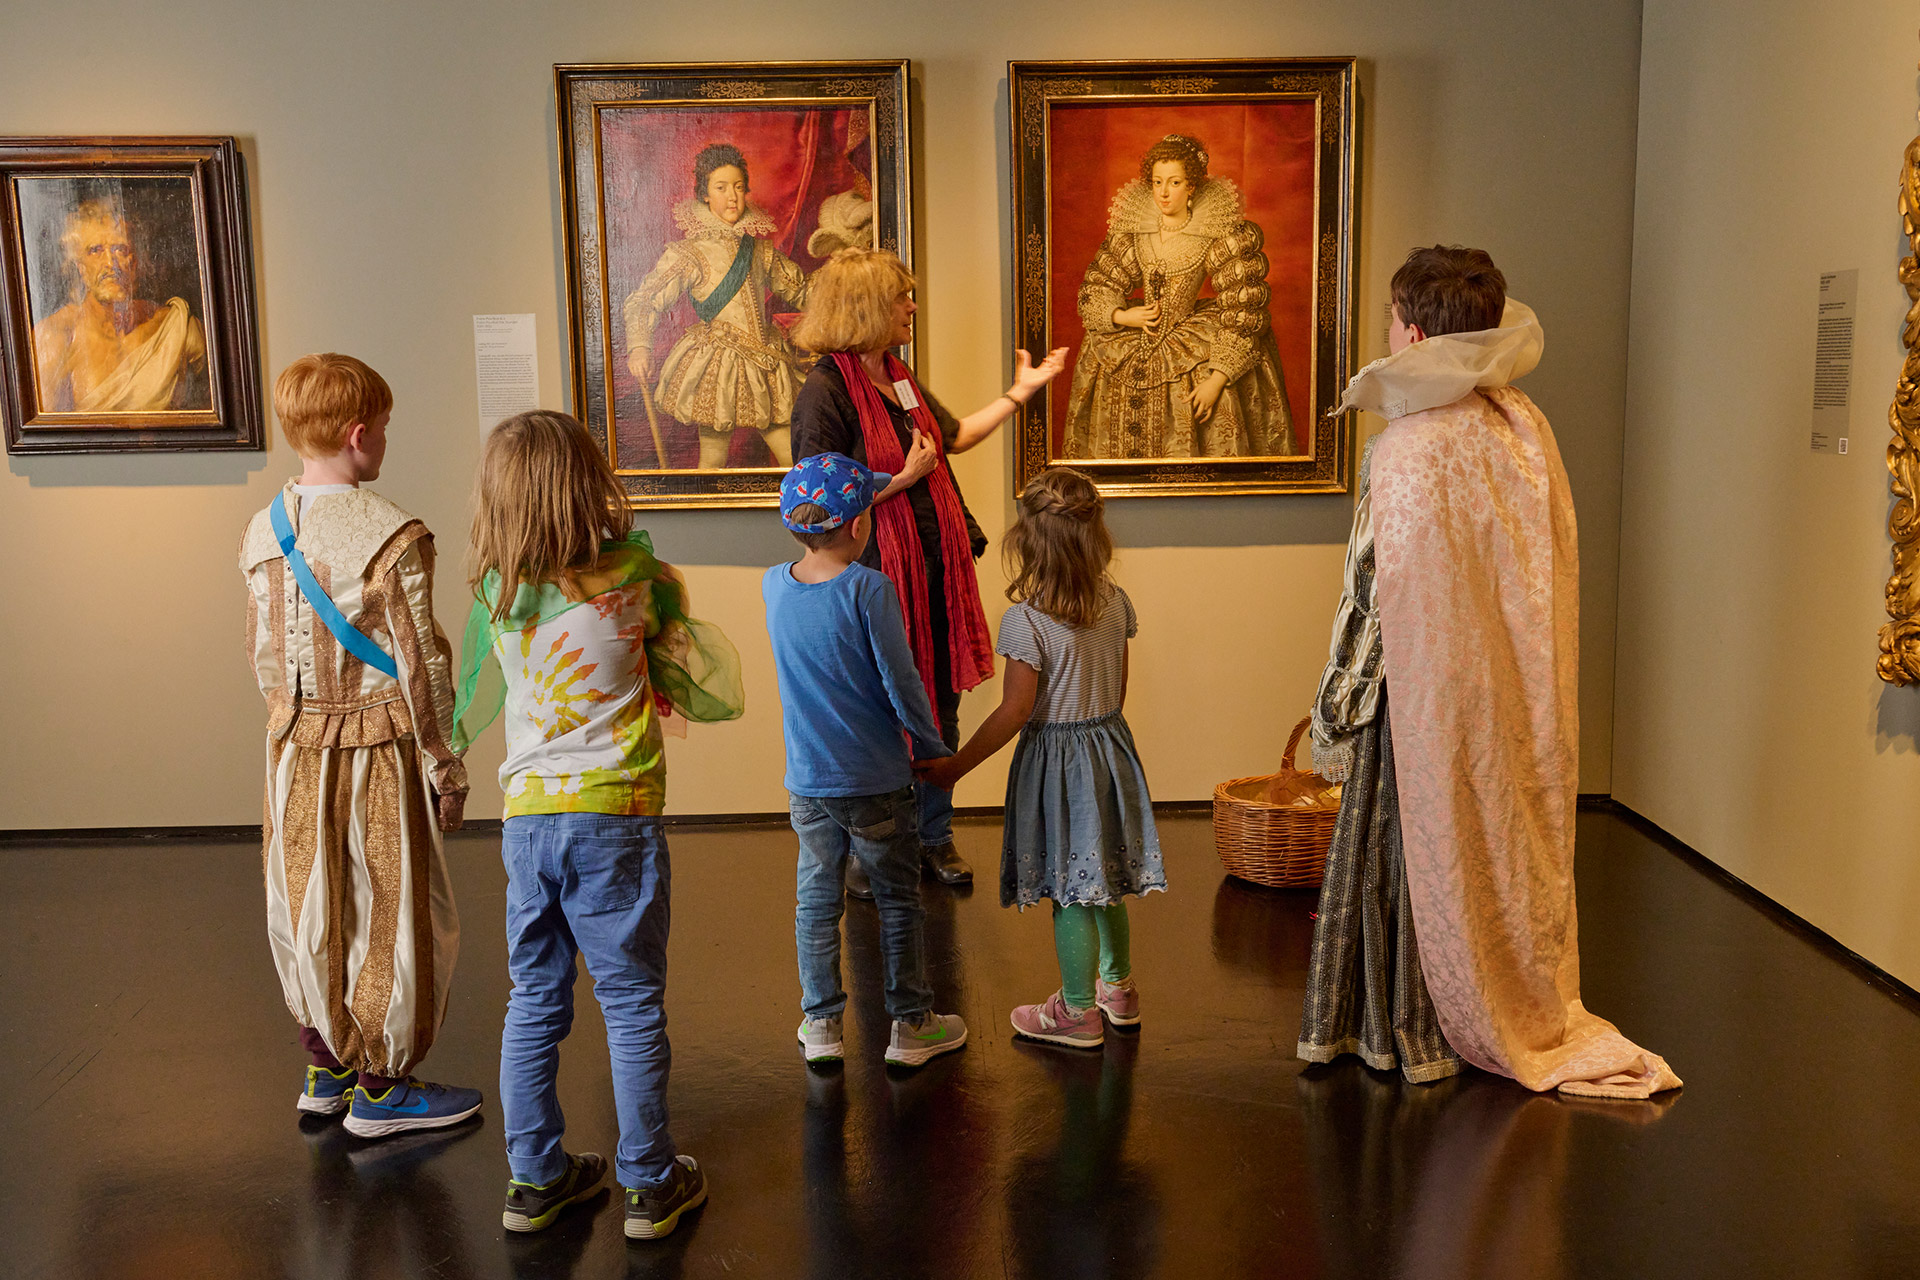 Mehrere Kinder stehen verkleidet in der Ausstellung und betrachten zwei Gemälde, auf denen die Porträtierte ähnlich prunkvolle Kleidung tragen.